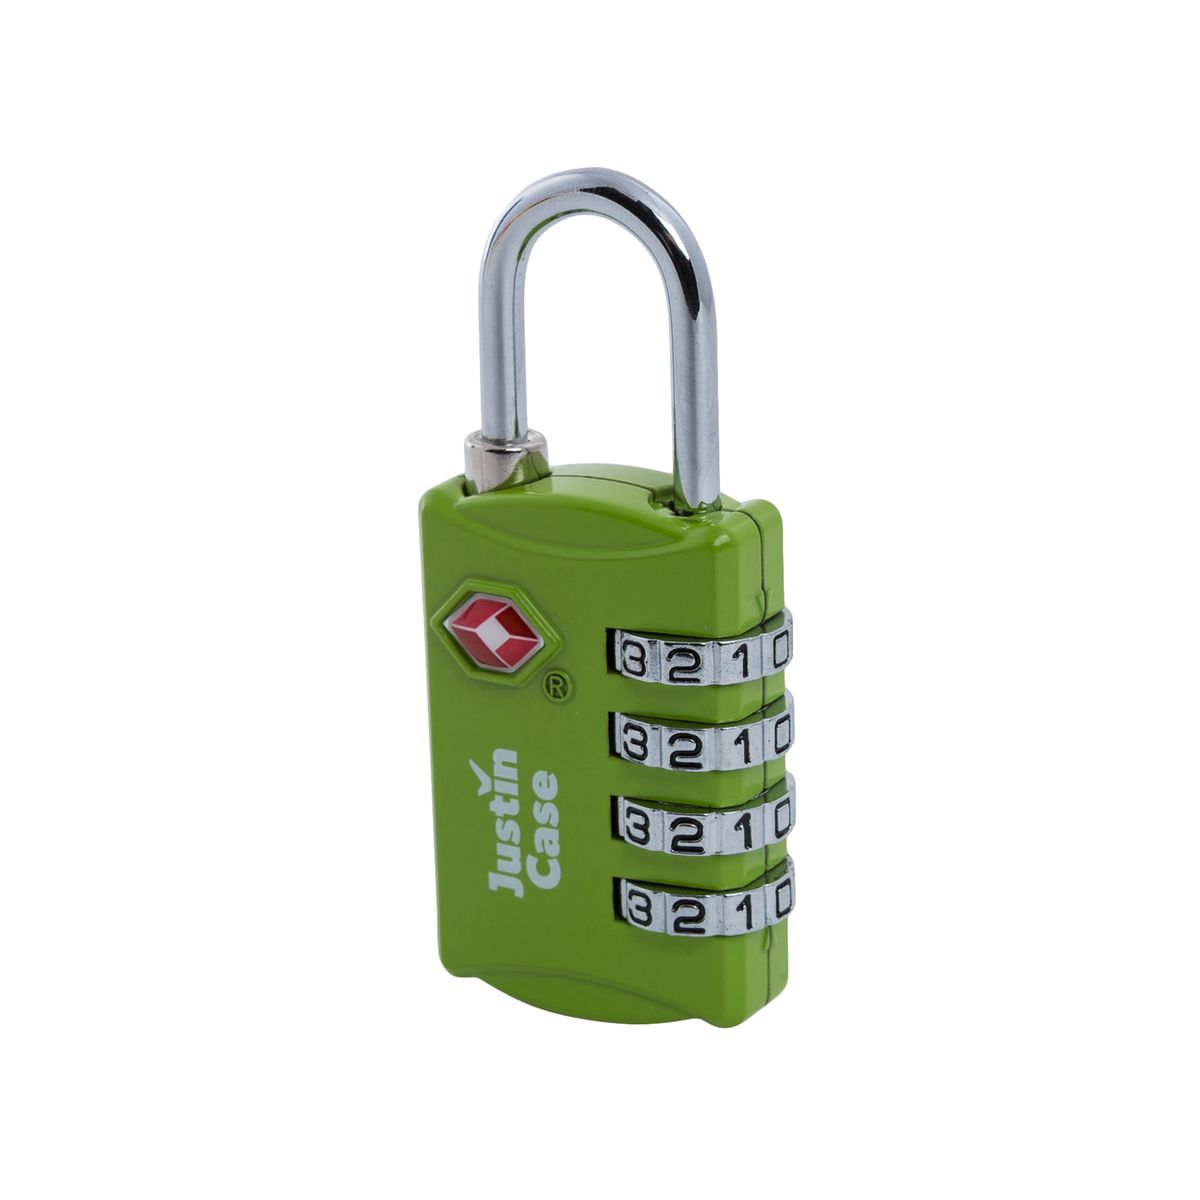 фото Замок кодовый для багажа JustinCase "4-Dial TSA Combination Lock", цвет: зеленый